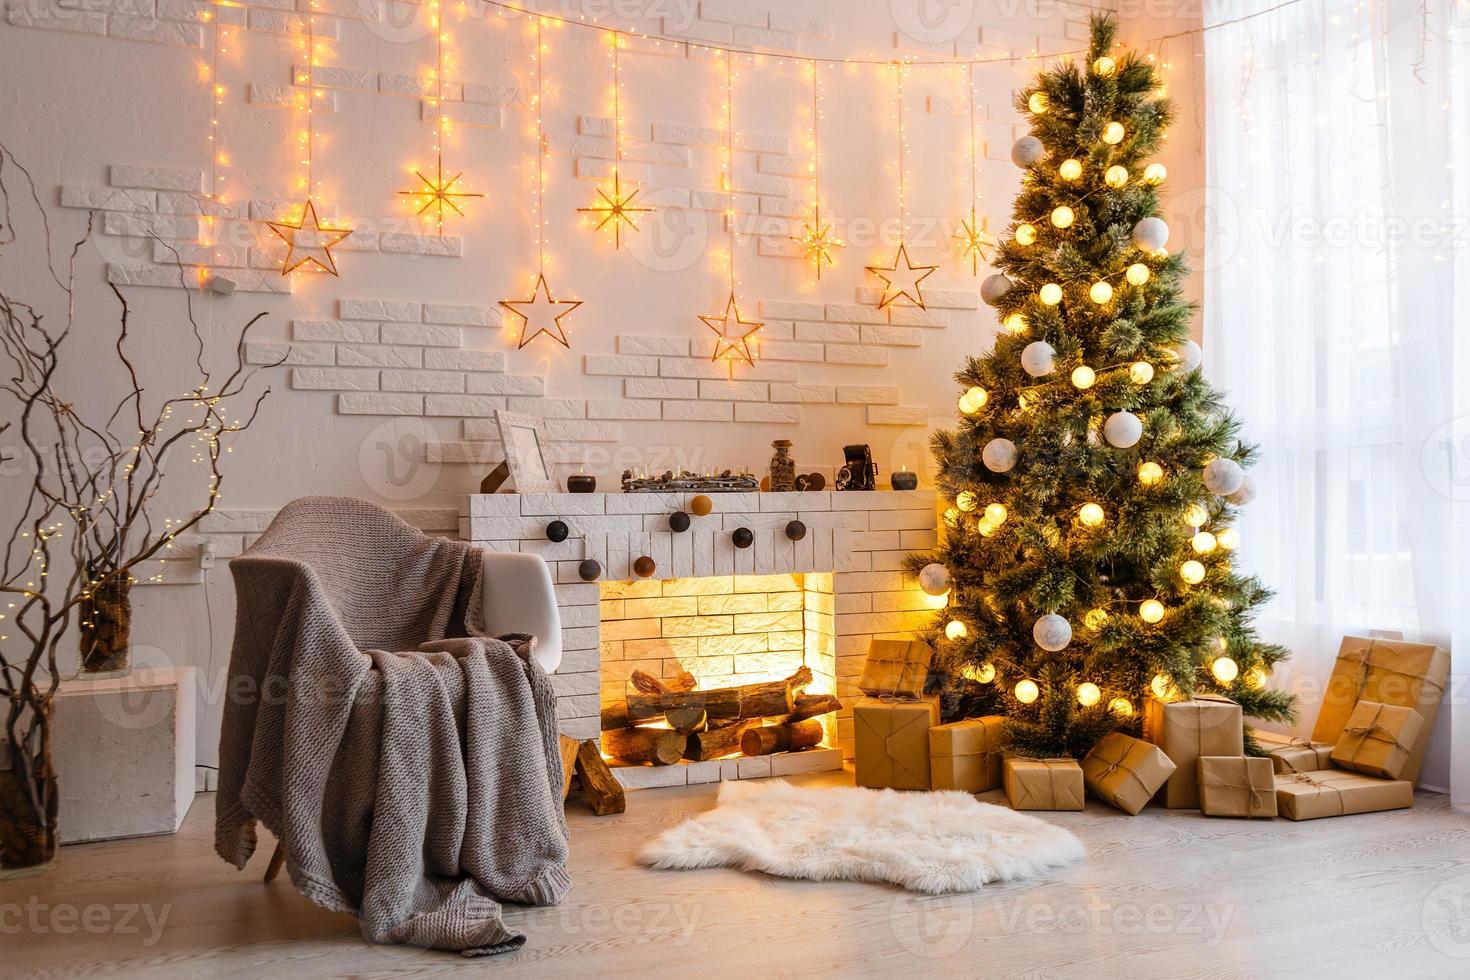 habitación interior decorada en estilo navideño. nadie. colores neutros comodidad del hogar del hogar moderno. una serie de fotos